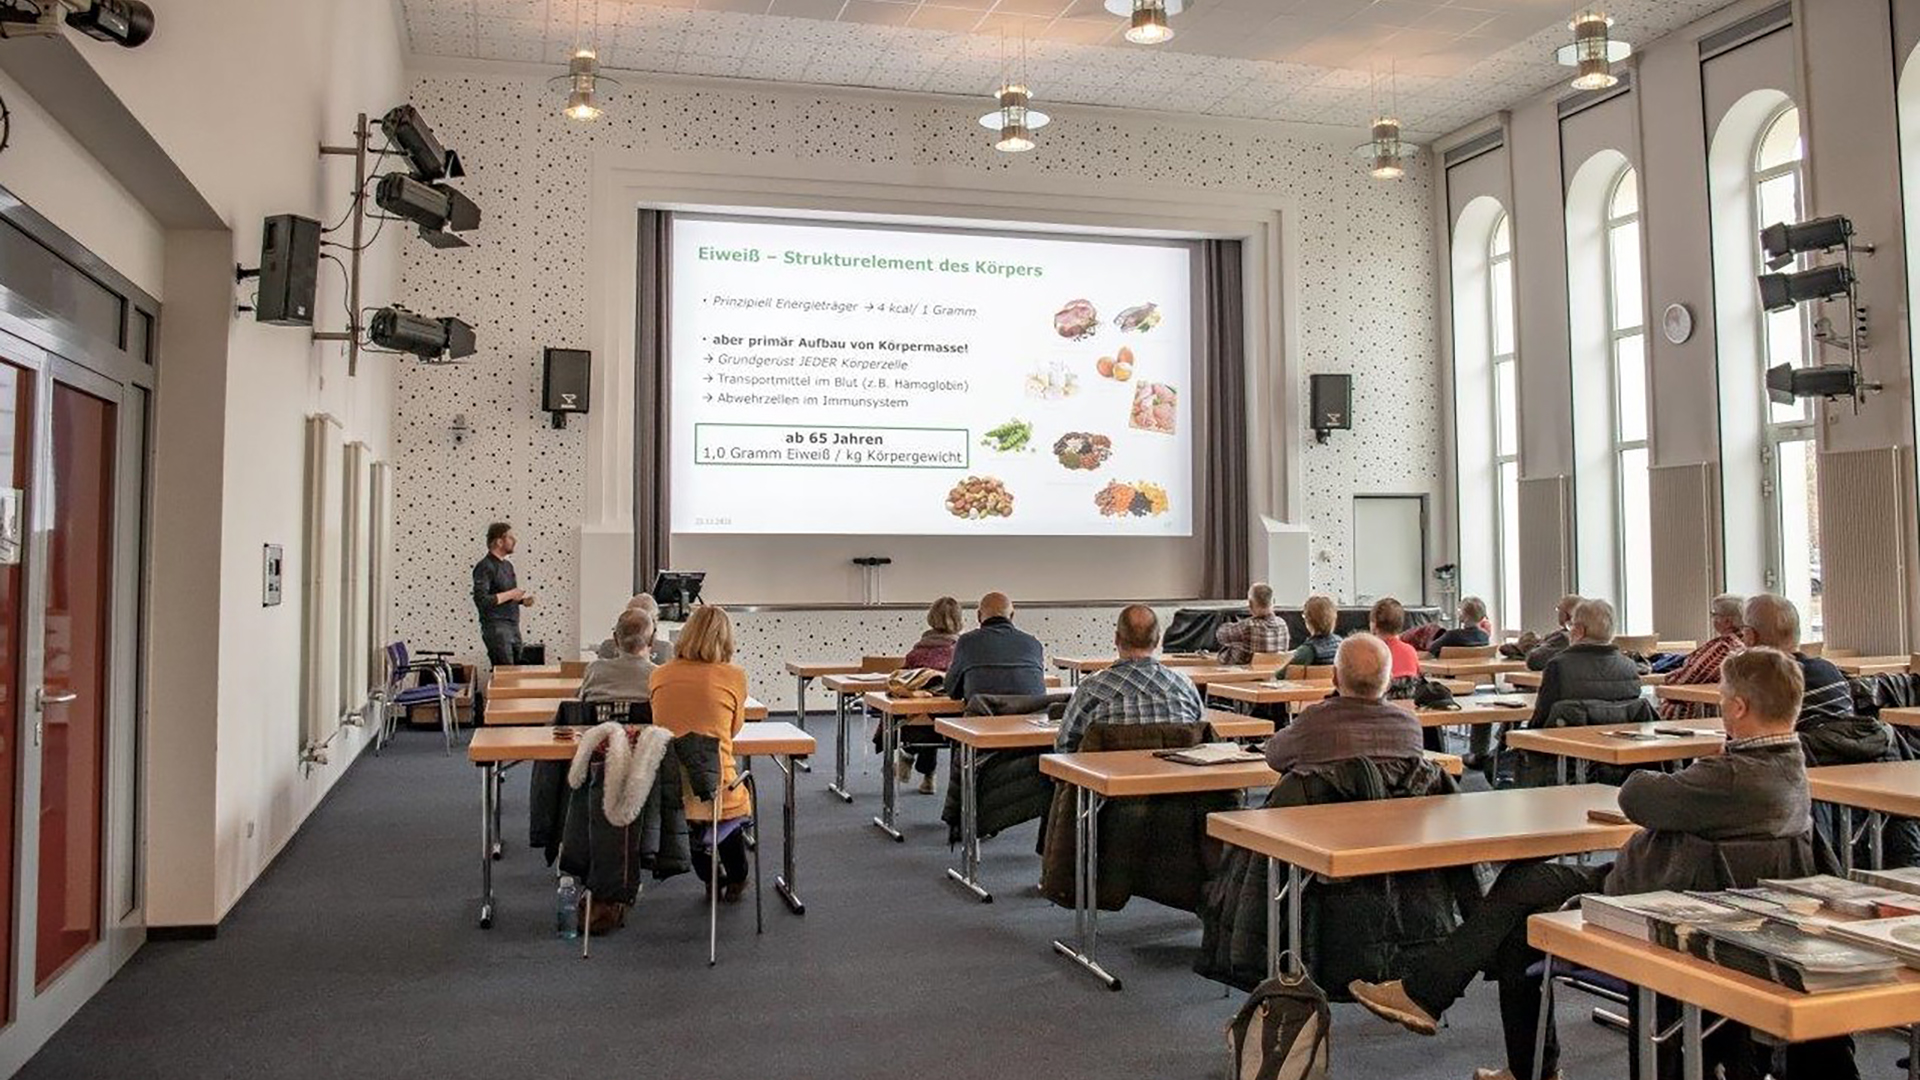 Die Zusammenhänge zwischen Ernährung und Gesundheit wurden im Vortrag des Deutschen Instituts für Ernährungsforschung nochmals deutlich herausgestellt. Foto: DIfE Susann C. Ruprecht